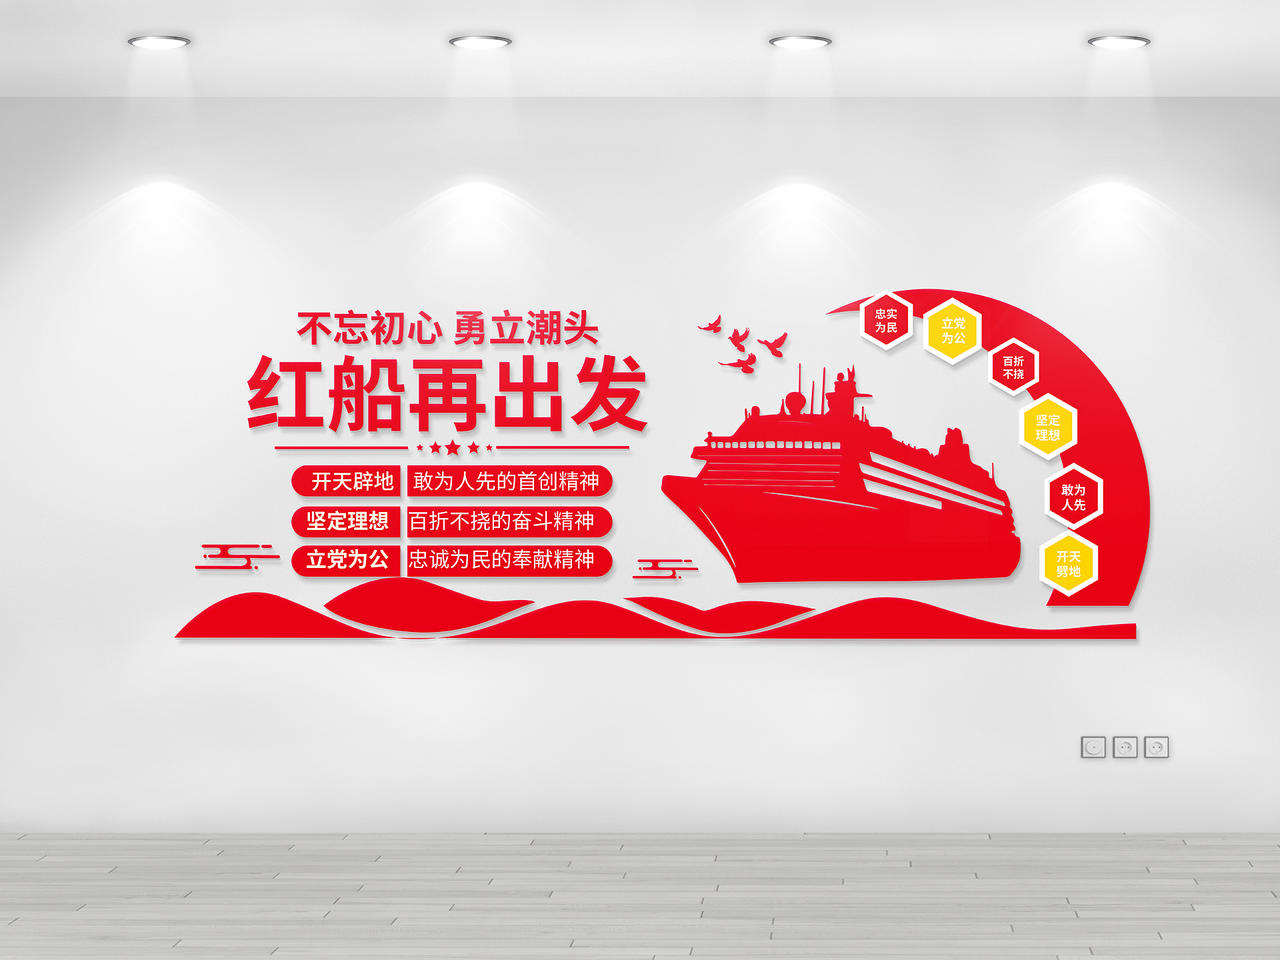 红色创意简洁不忘初心勇立潮头红船再出发文化墙设计红船精神文化墙